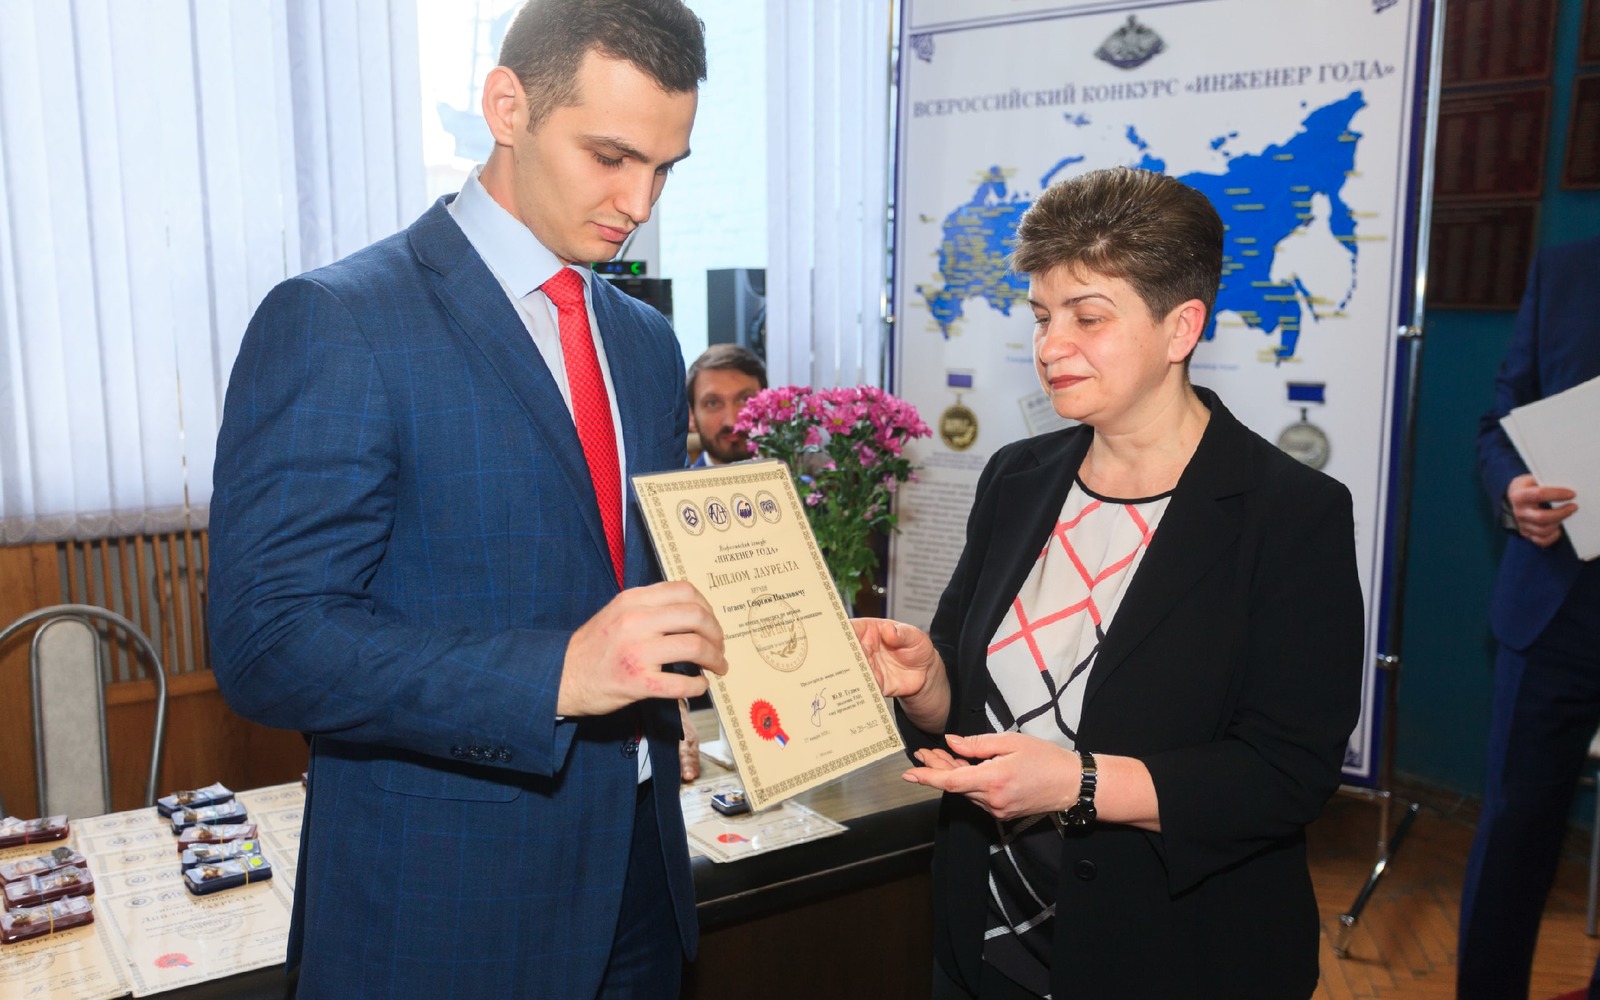 Маёвец Георгий Гогаев вошёл в число победителей конкурса «Инженер года — 2019»